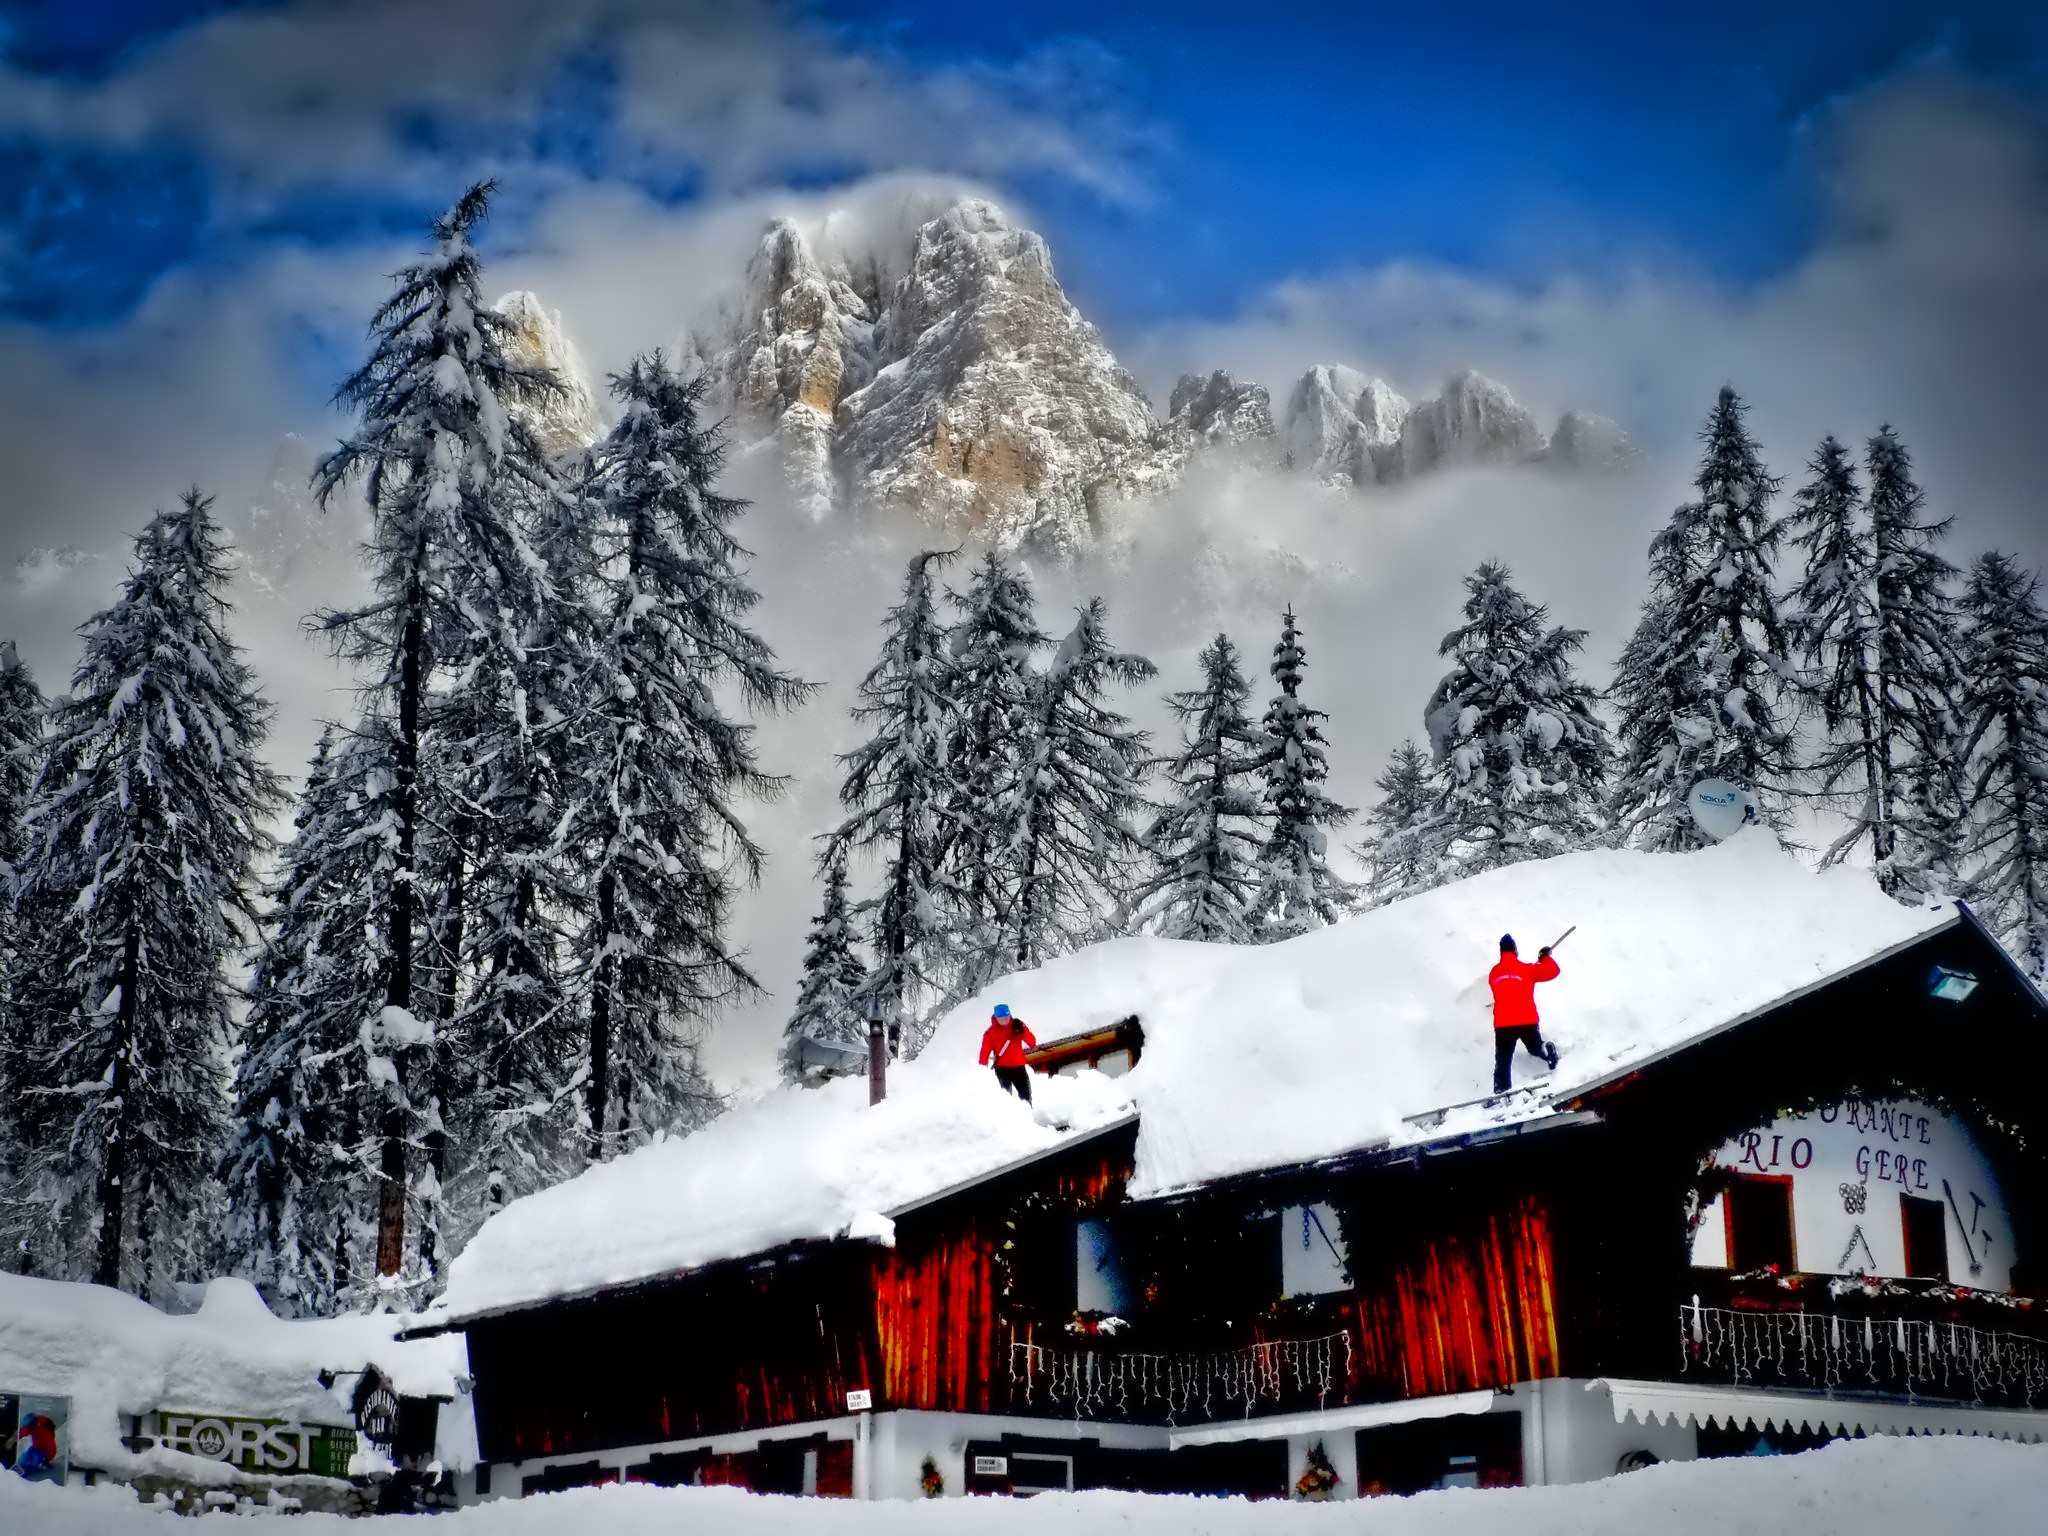 Скачать обои бесплатно Зима, Снег, Гора, Дерево, Фотографии картинка на рабочий стол ПК